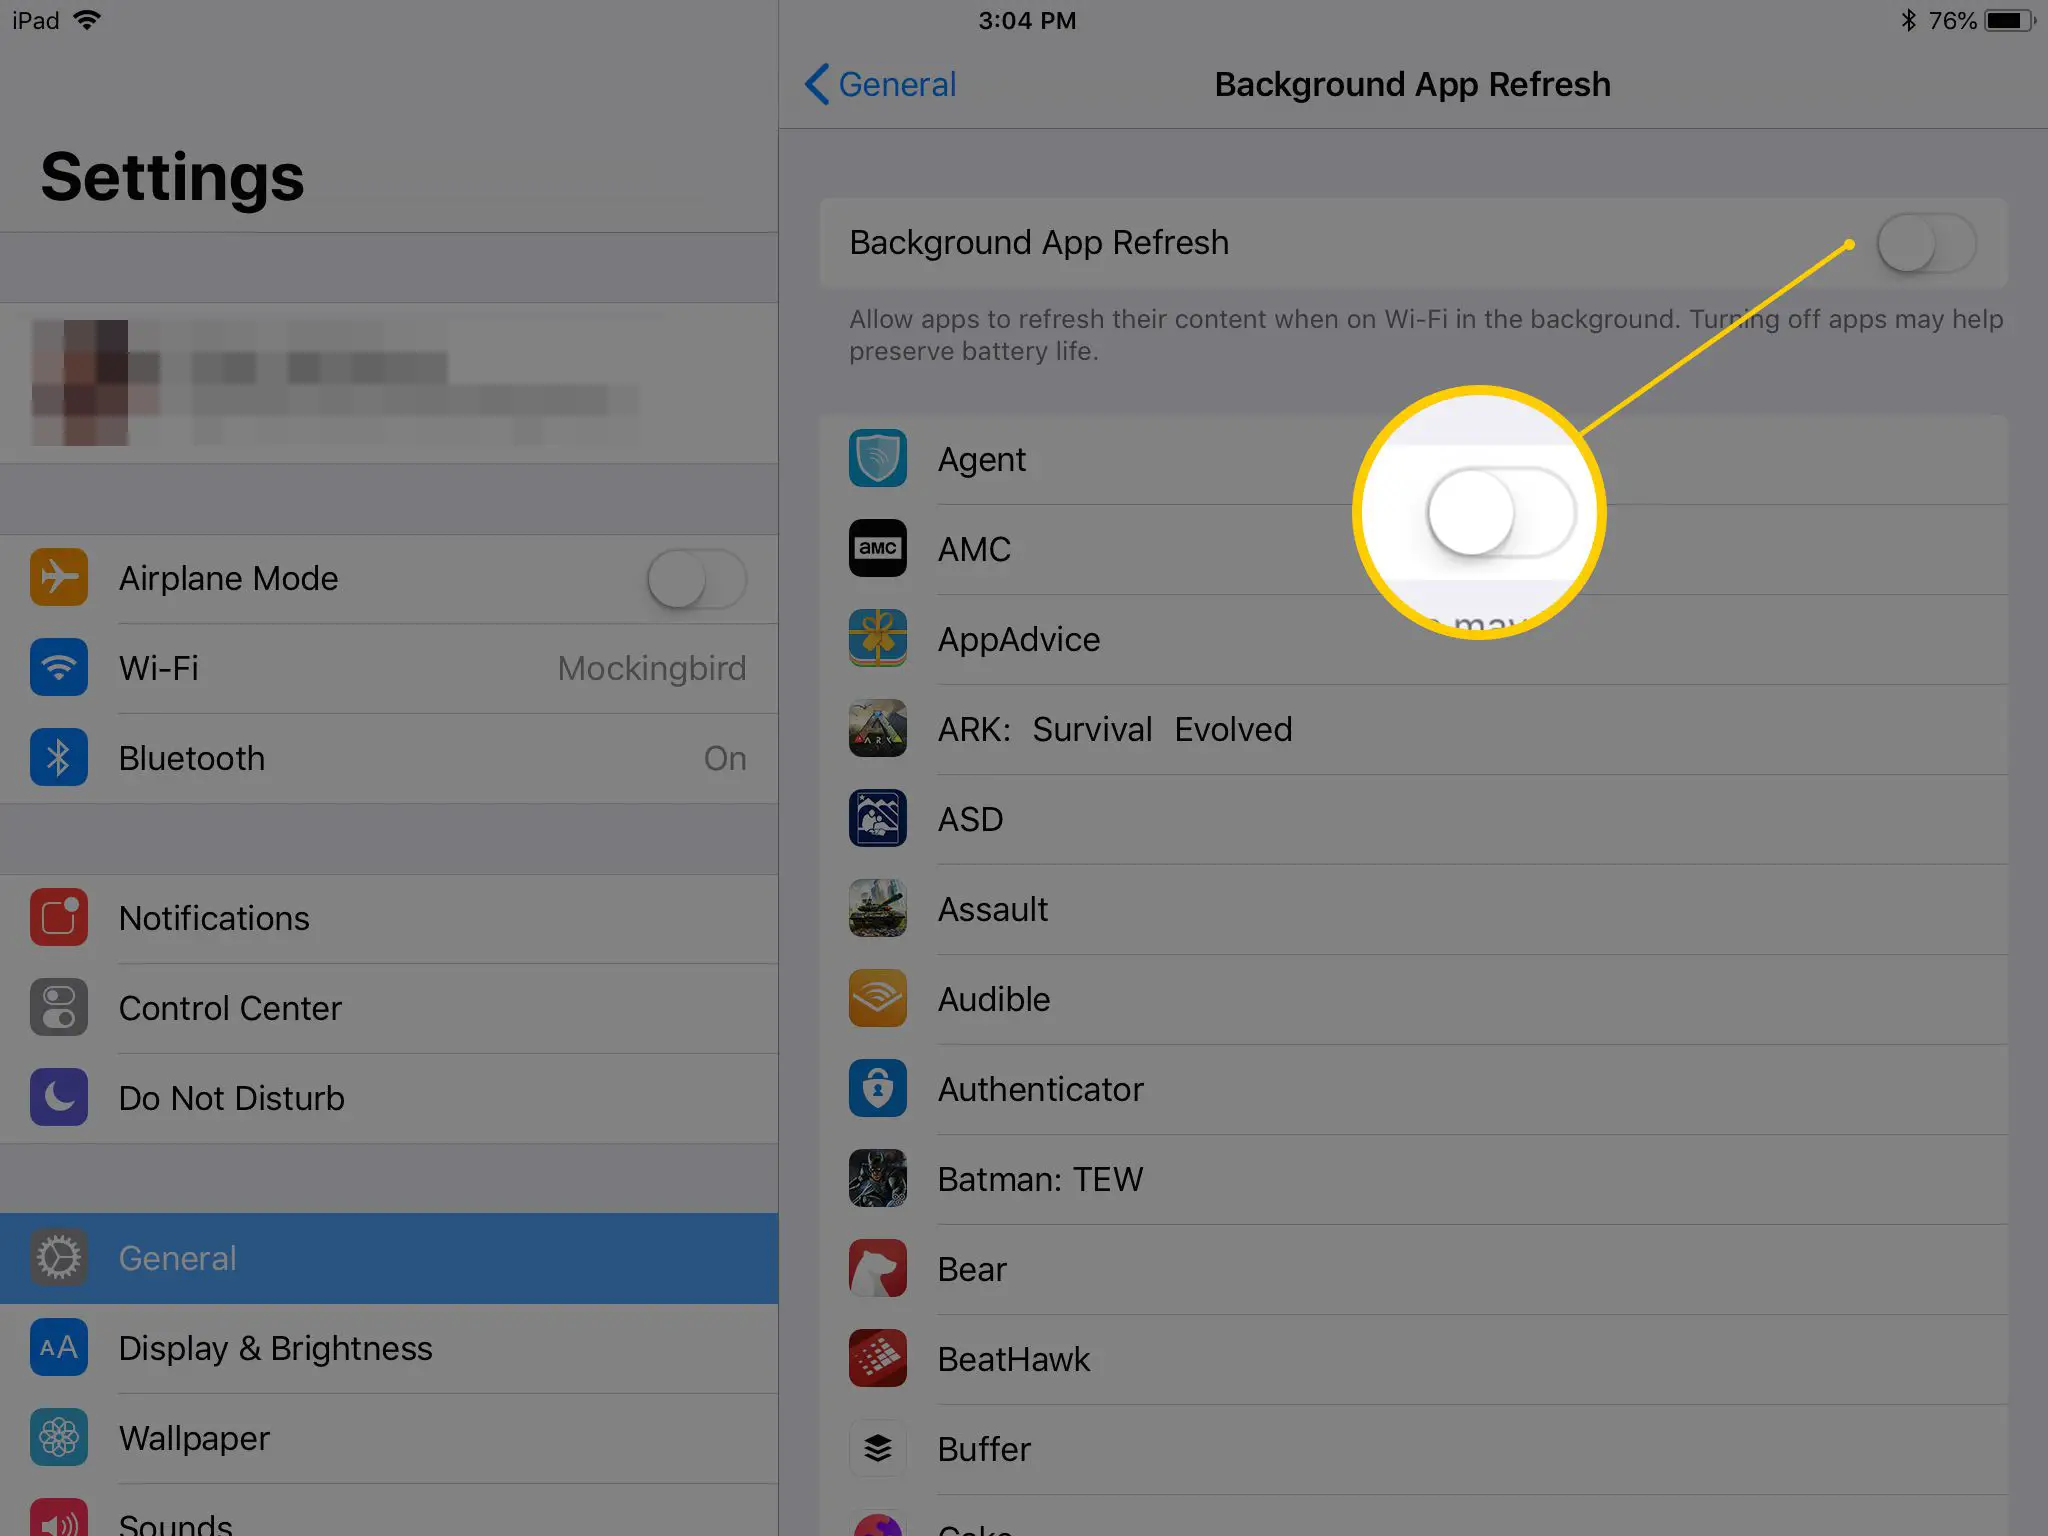 Tela de configurações de atualização do aplicativo em segundo plano no iPad